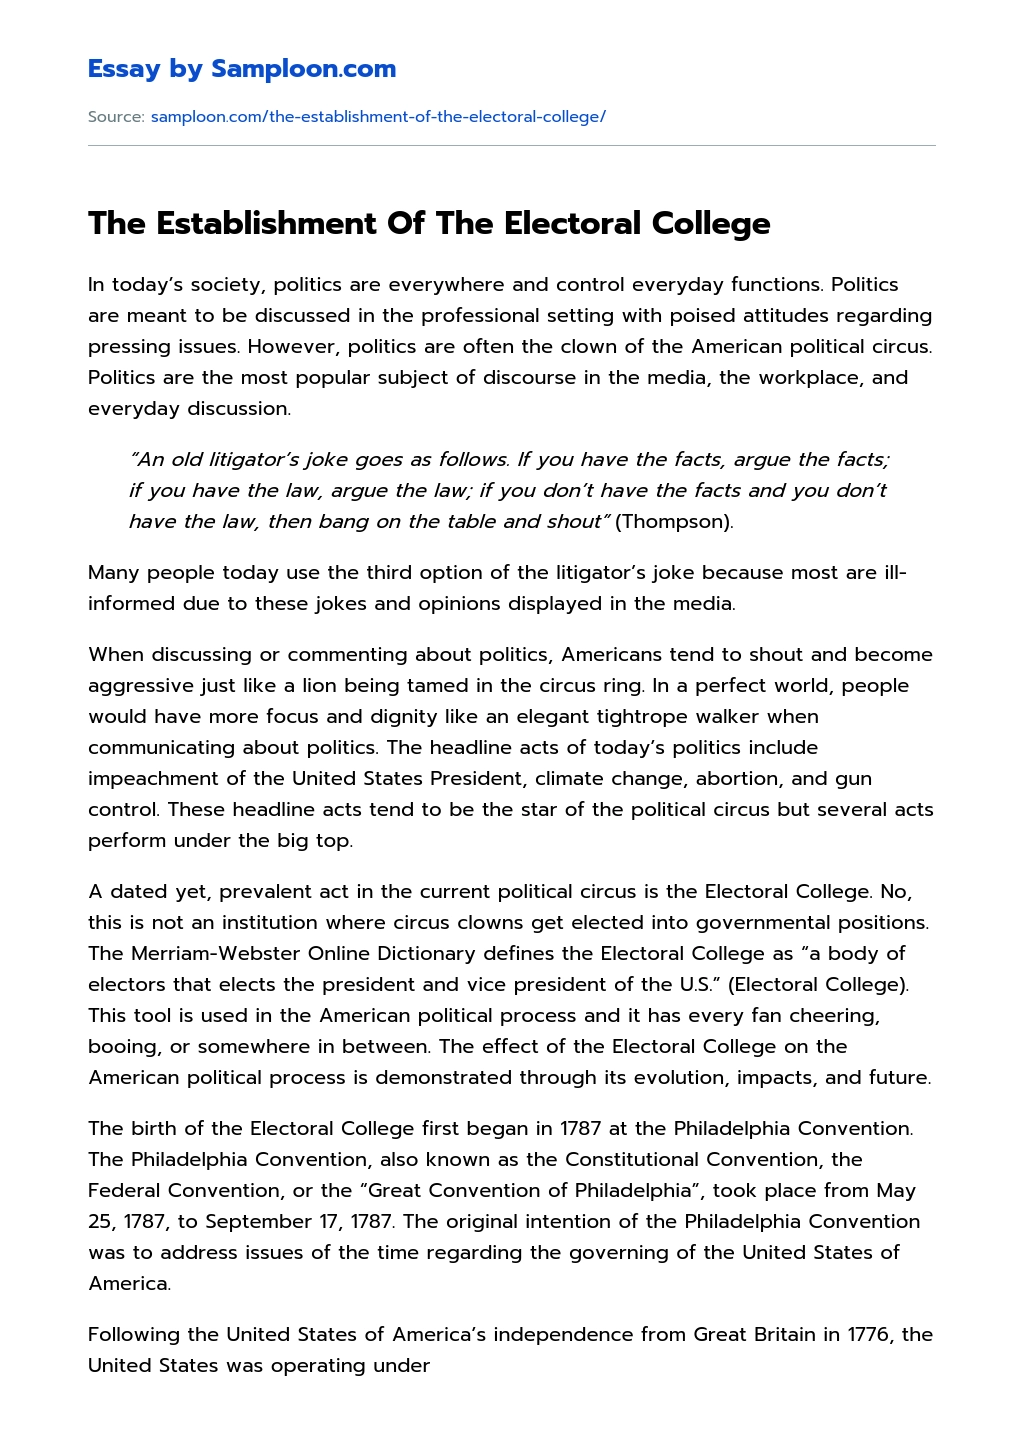 The Establishment Of The Electoral College essay